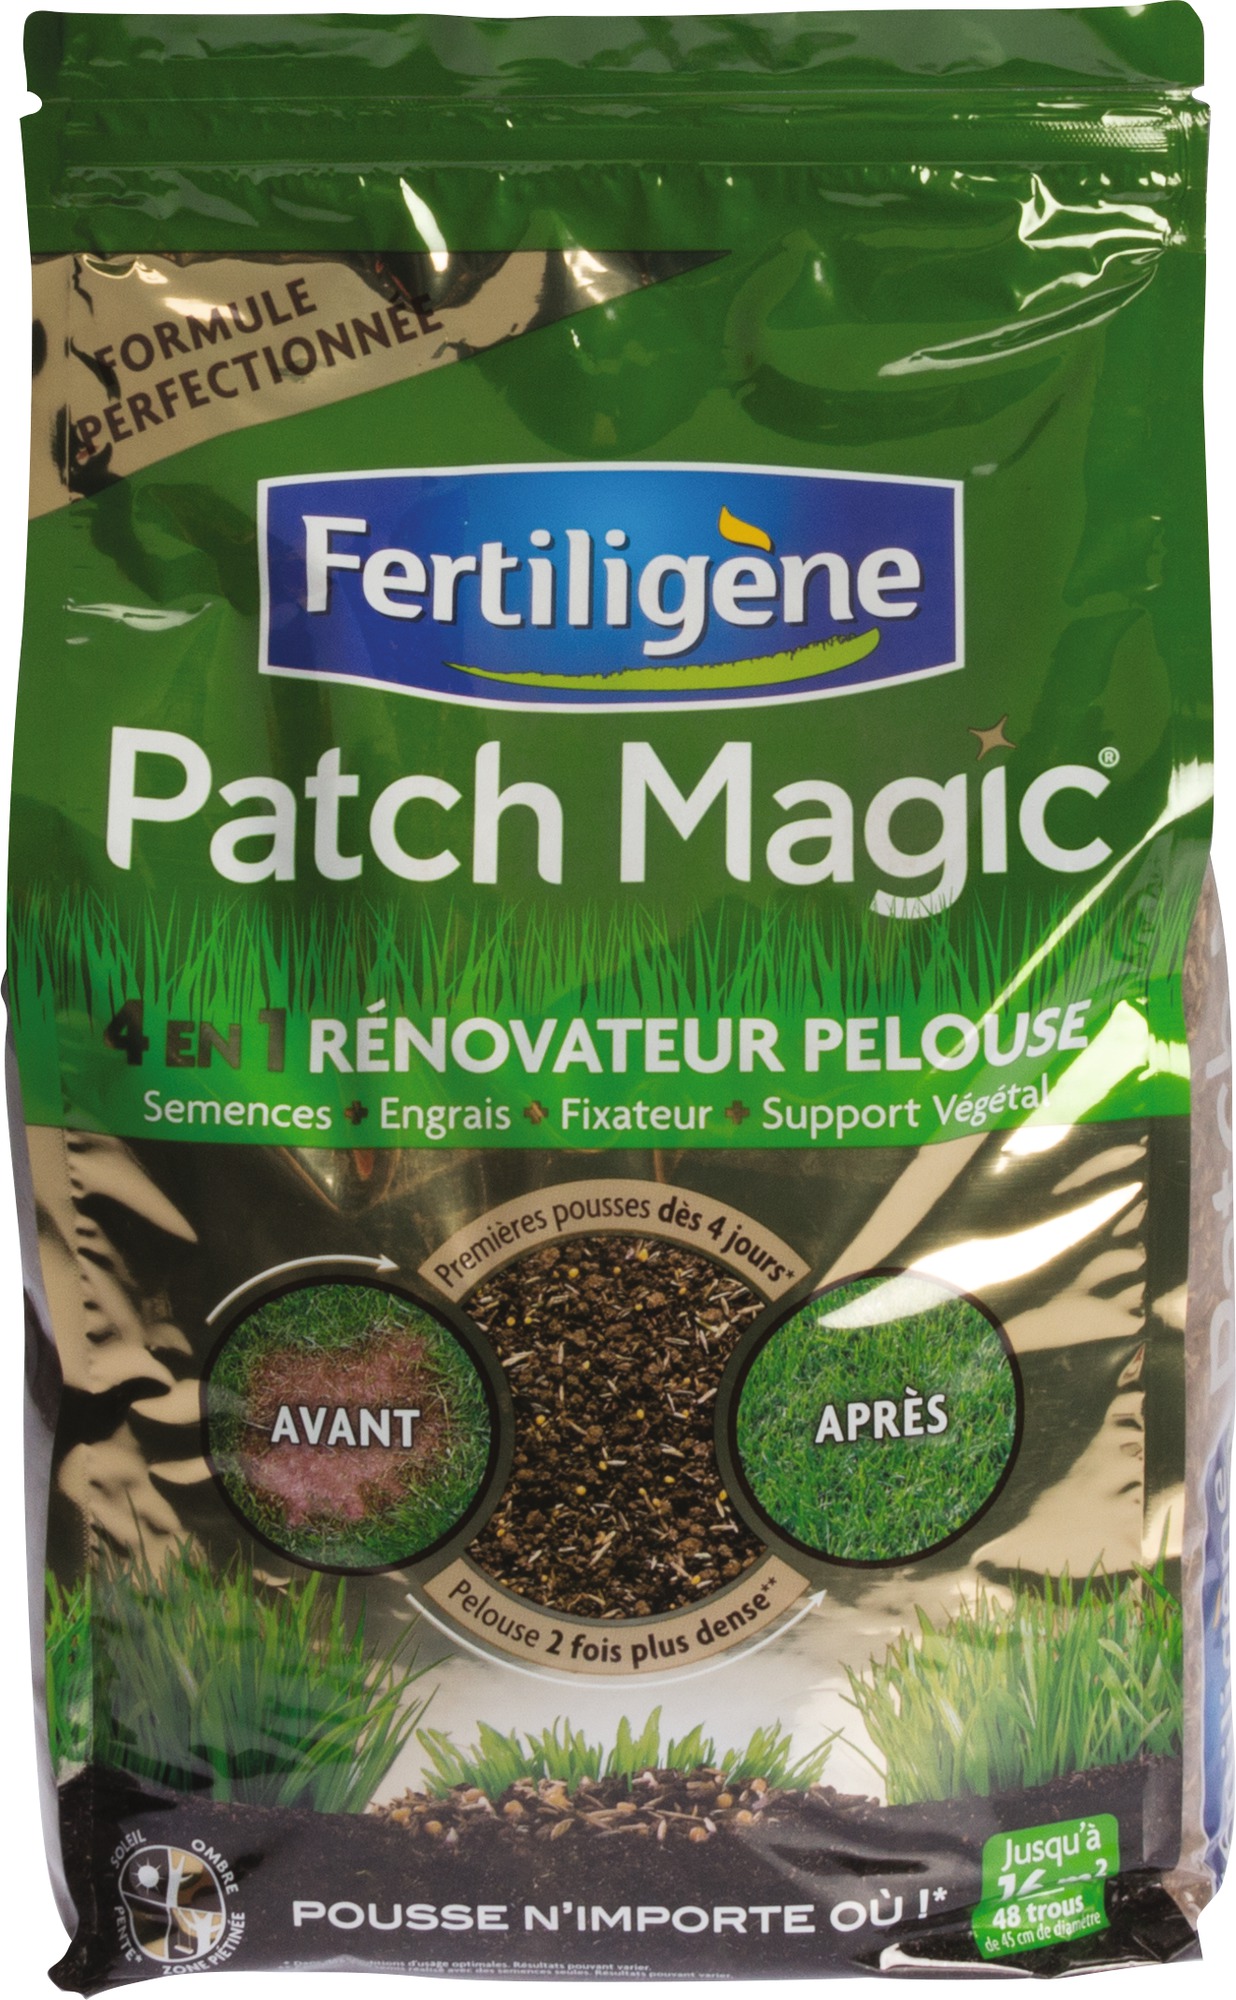 Patch Magic 4 en 1 rénovateur pelouse